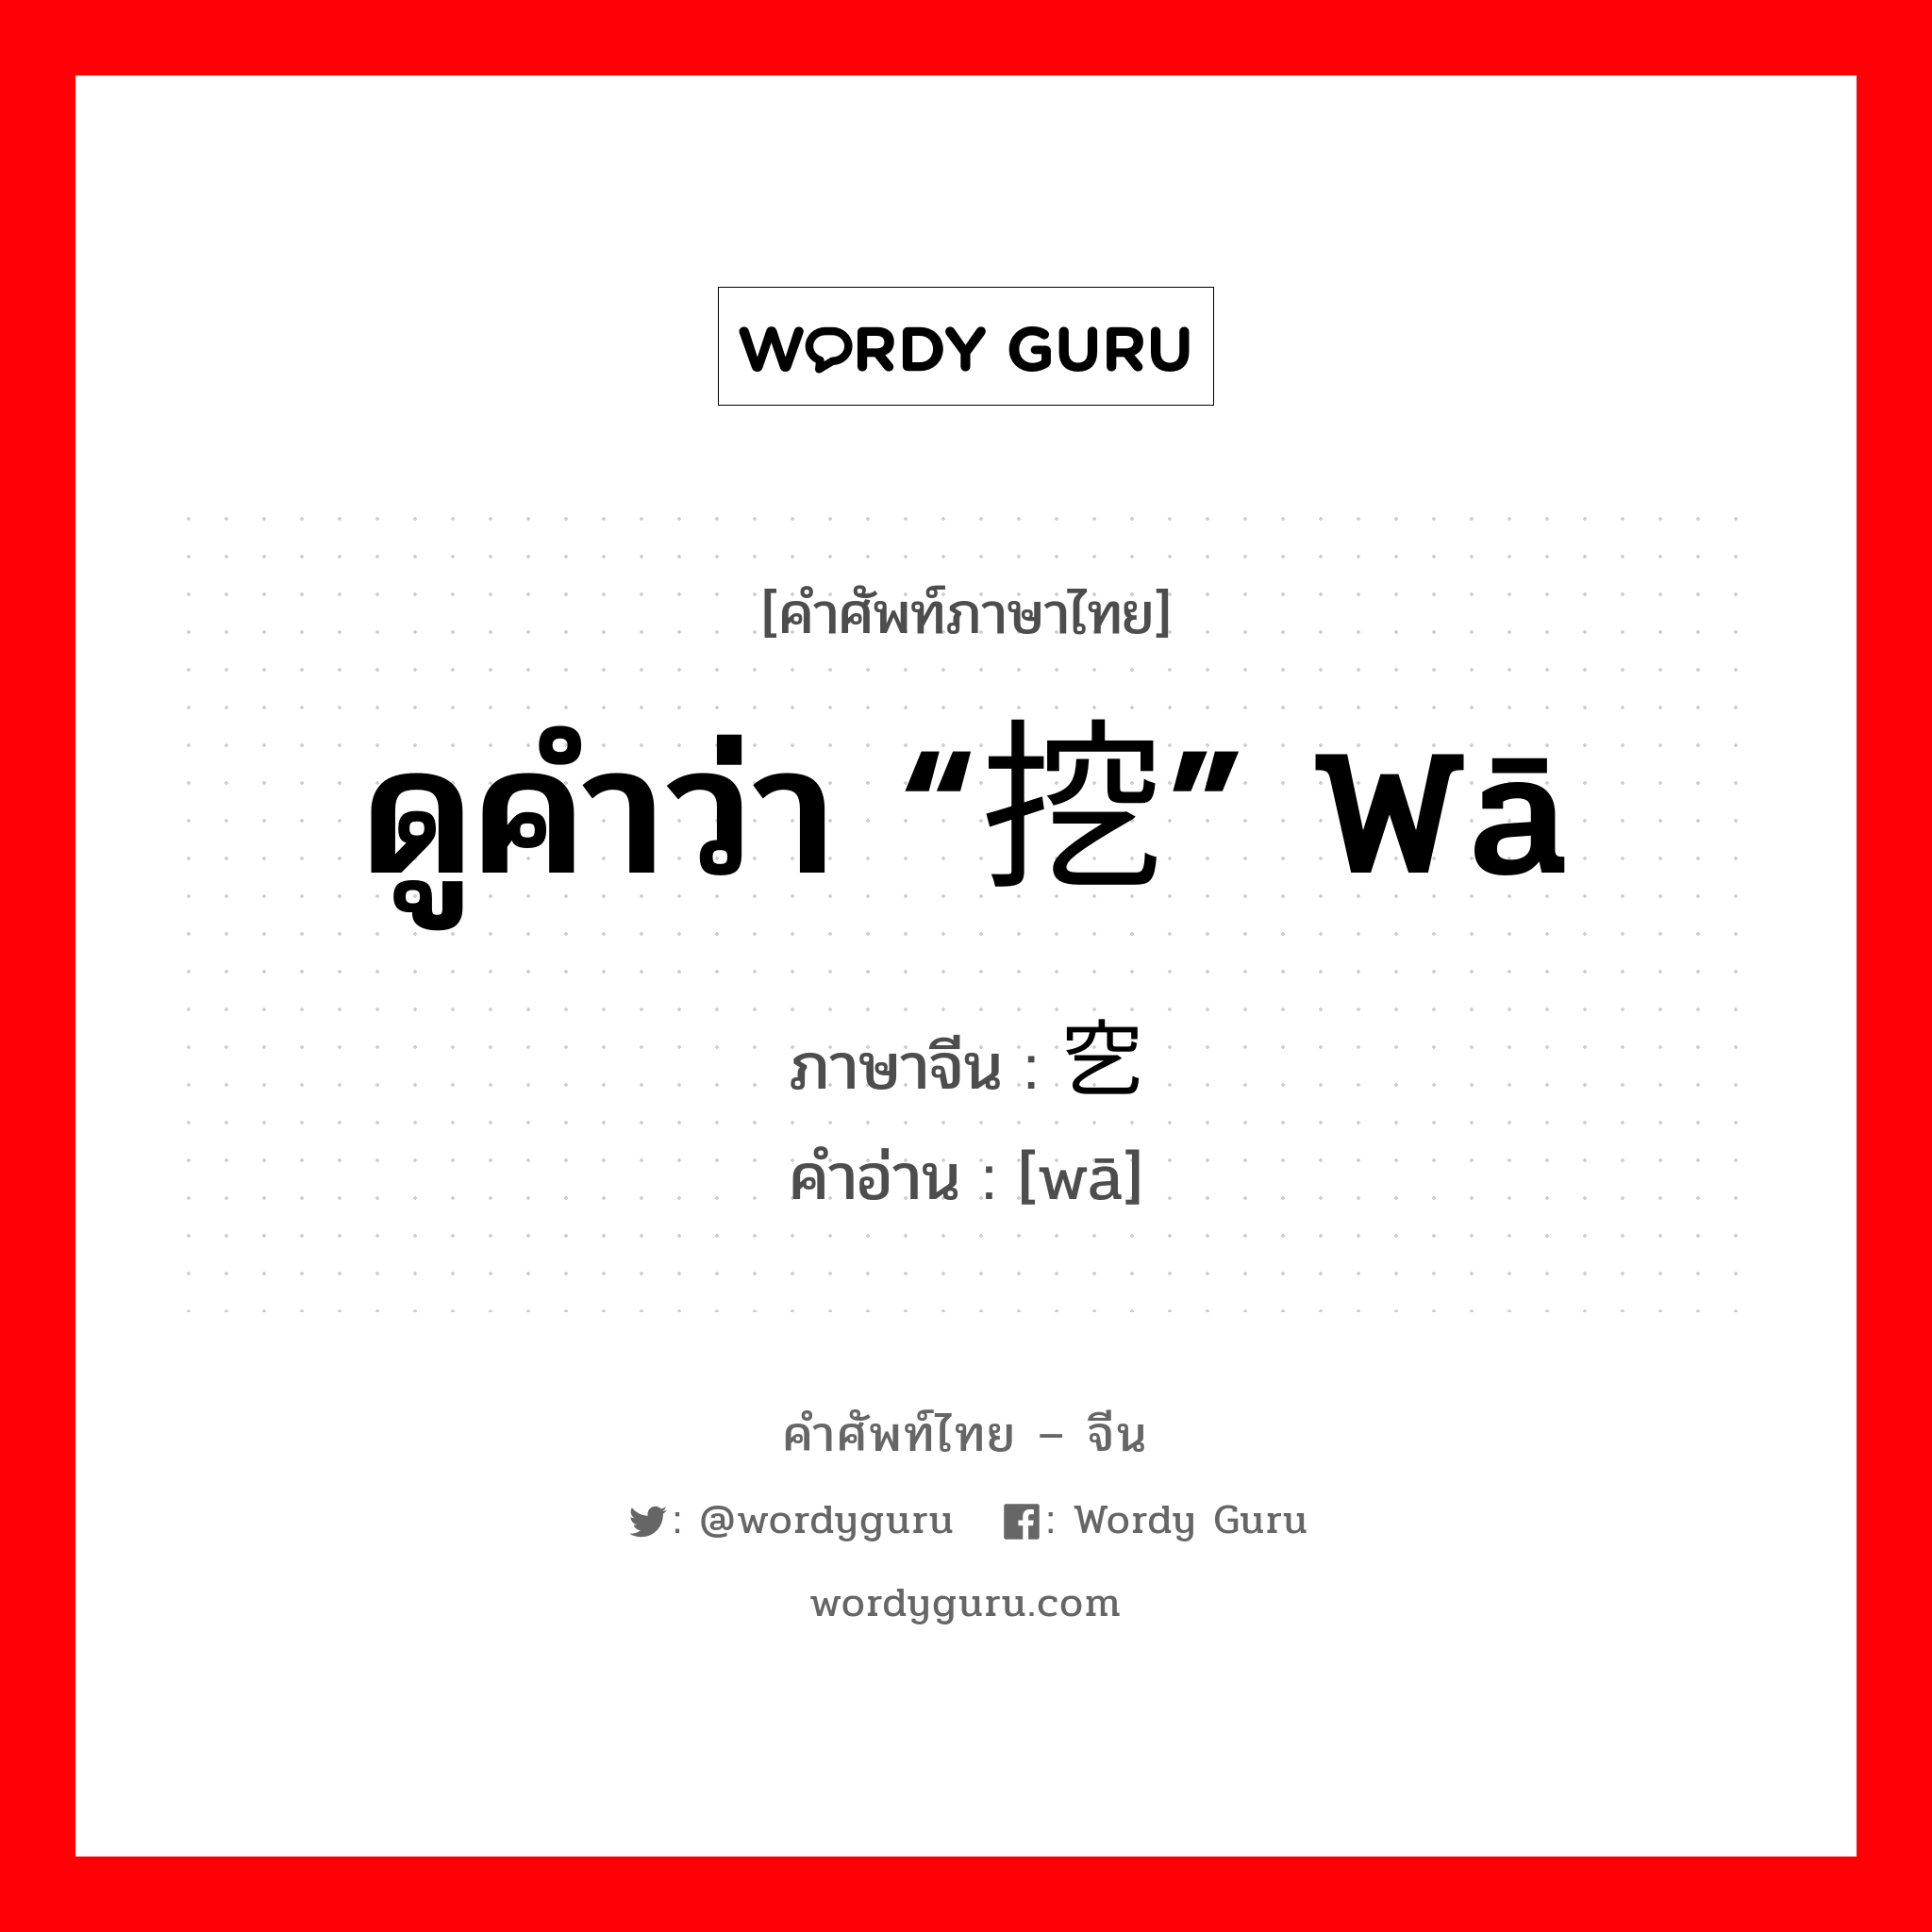 ดูคำว่า “挖” wā ภาษาจีนคืออะไร, คำศัพท์ภาษาไทย - จีน ดูคำว่า “挖” wā ภาษาจีน 穵 คำอ่าน [wā]